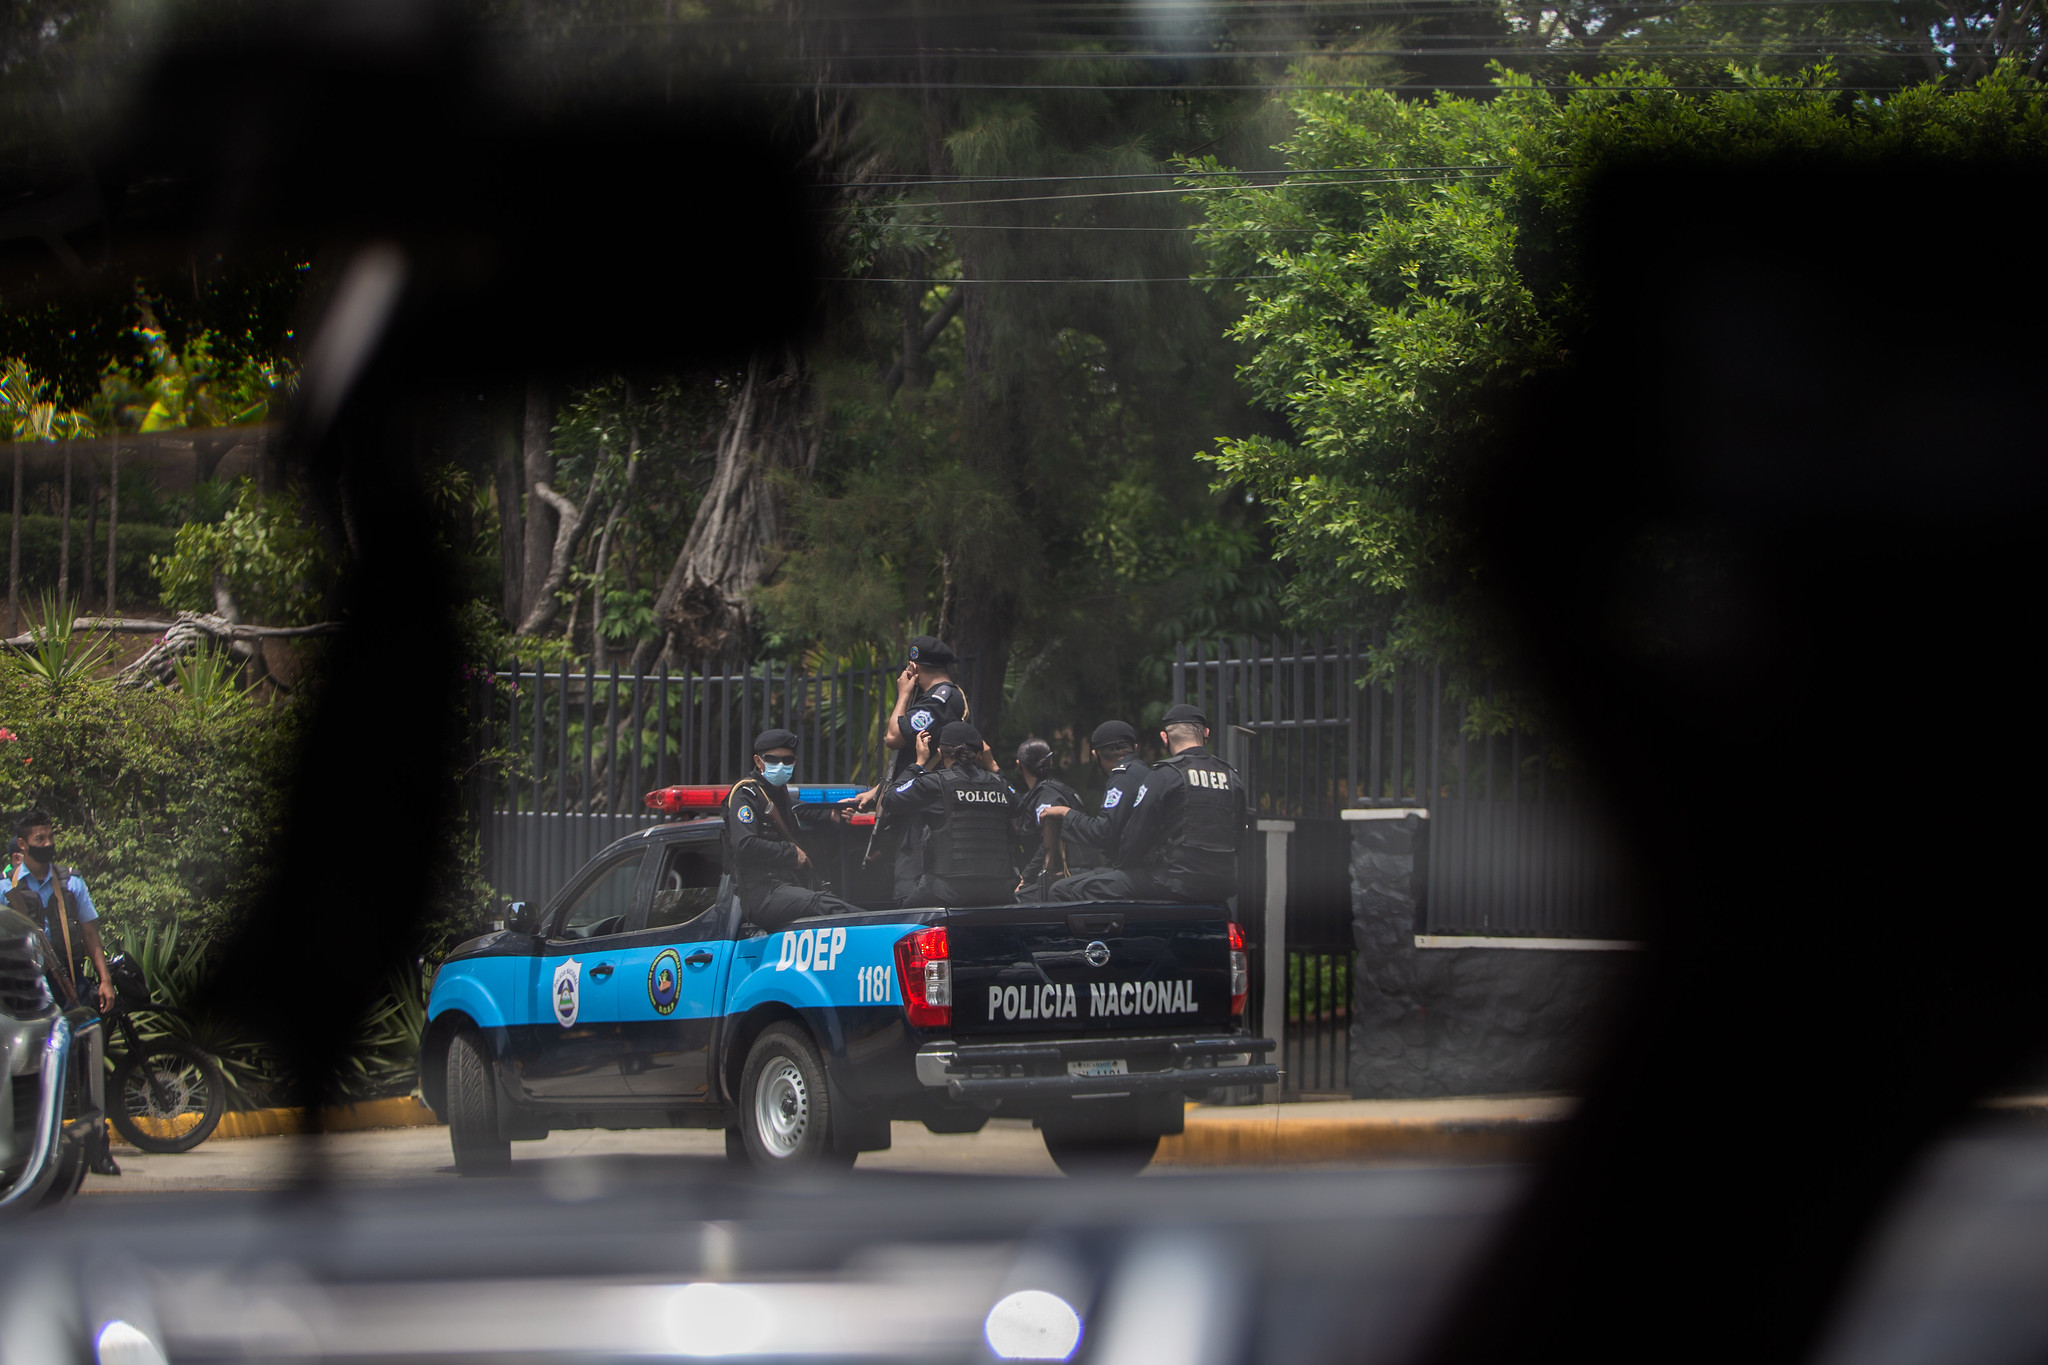 “La salida electoral no existe”. La radicalización del régimen agrava todo en Nicaragua